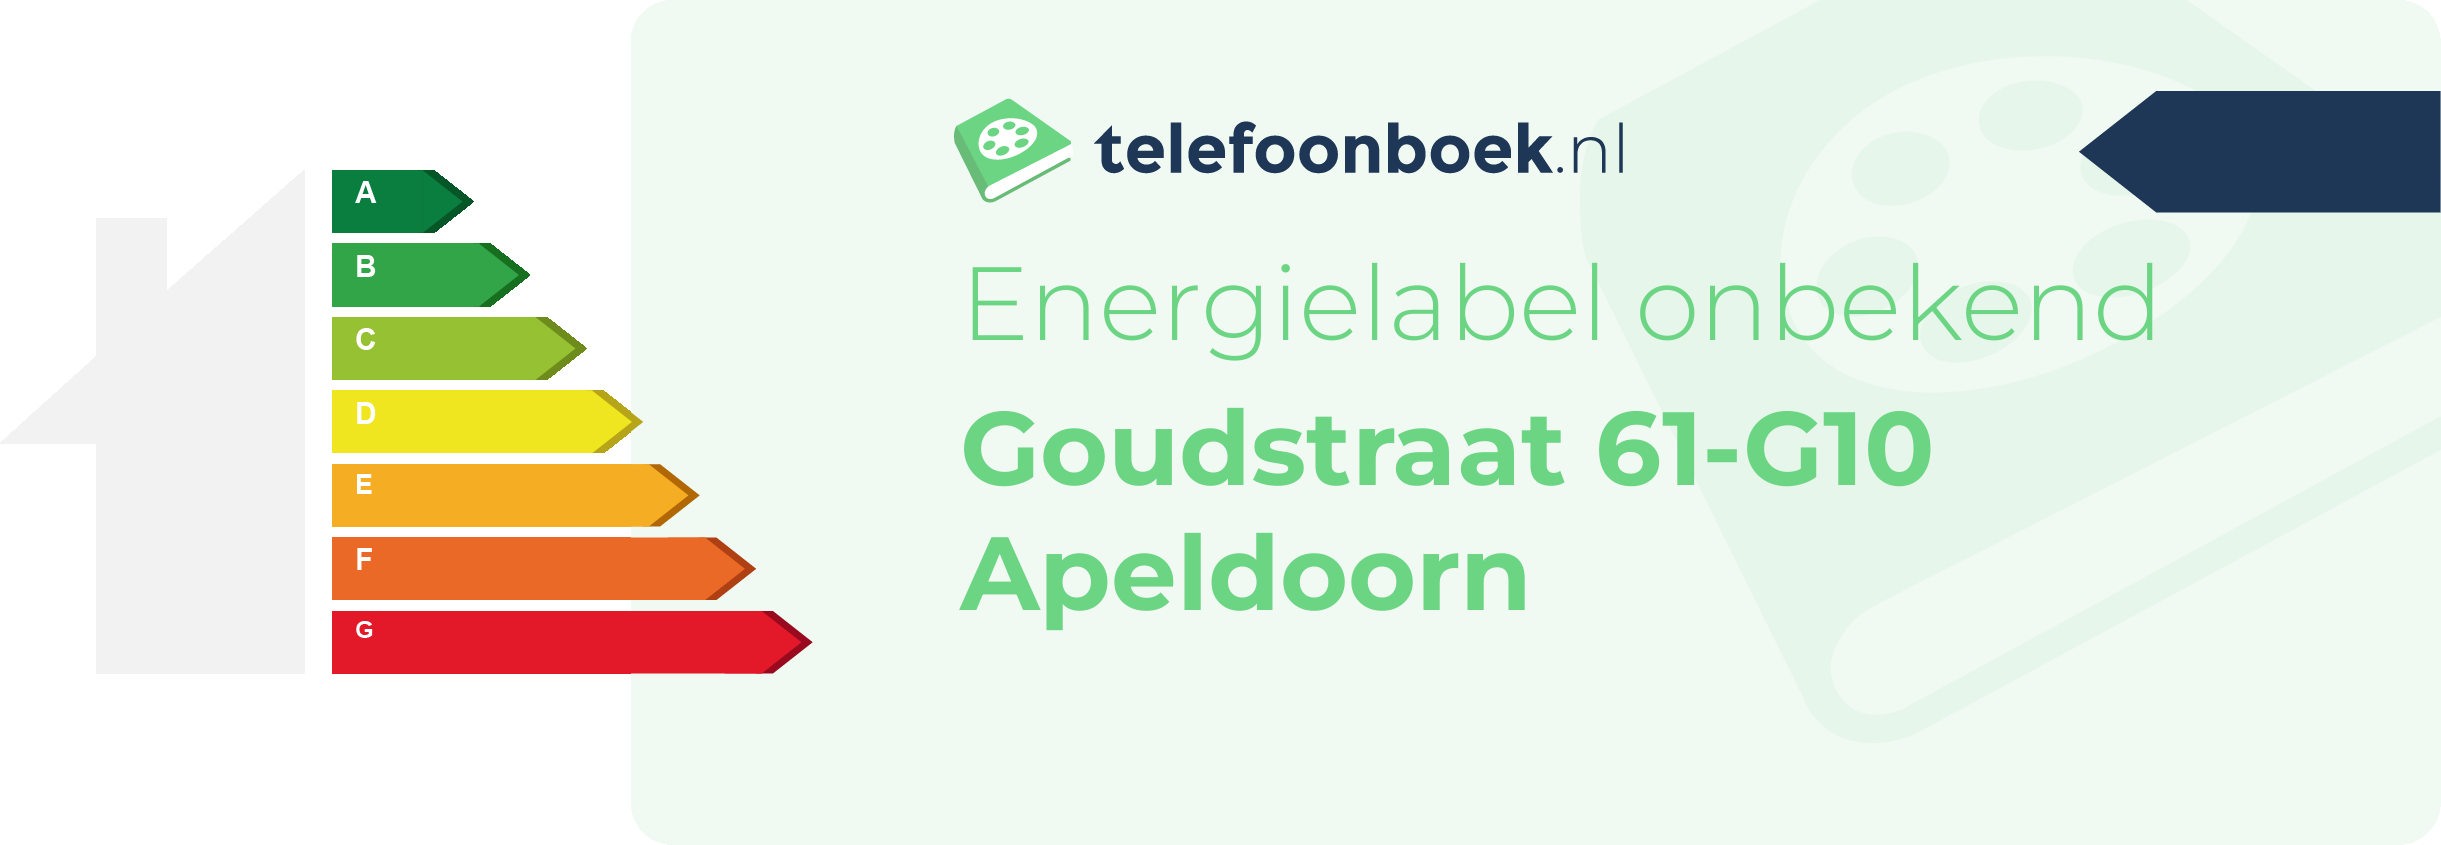 Energielabel Goudstraat 61-G10 Apeldoorn